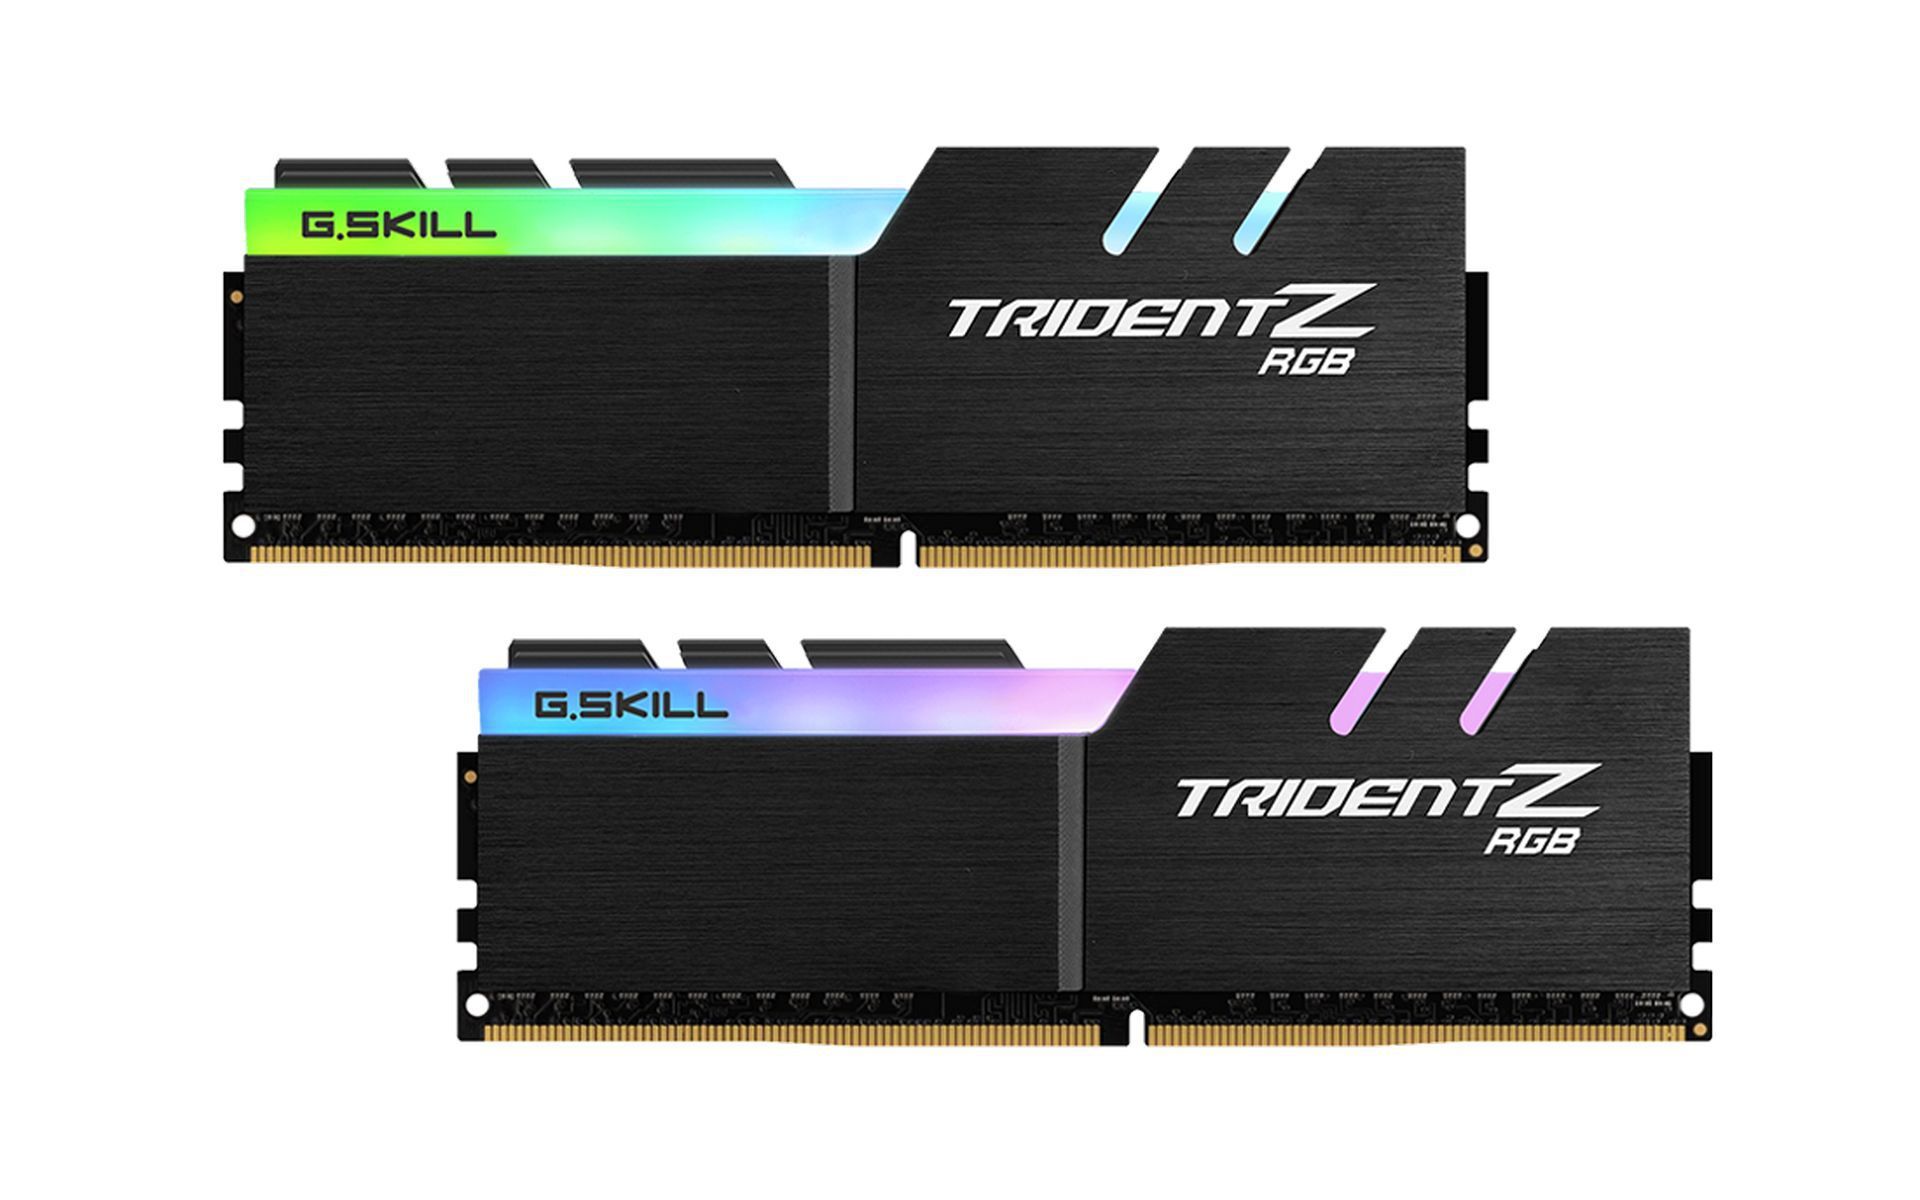 Ram Gskill Trident Z RGB 64GB (2x32GB) DDR4 3600MHz (F4-3600C18D-64GTZR)